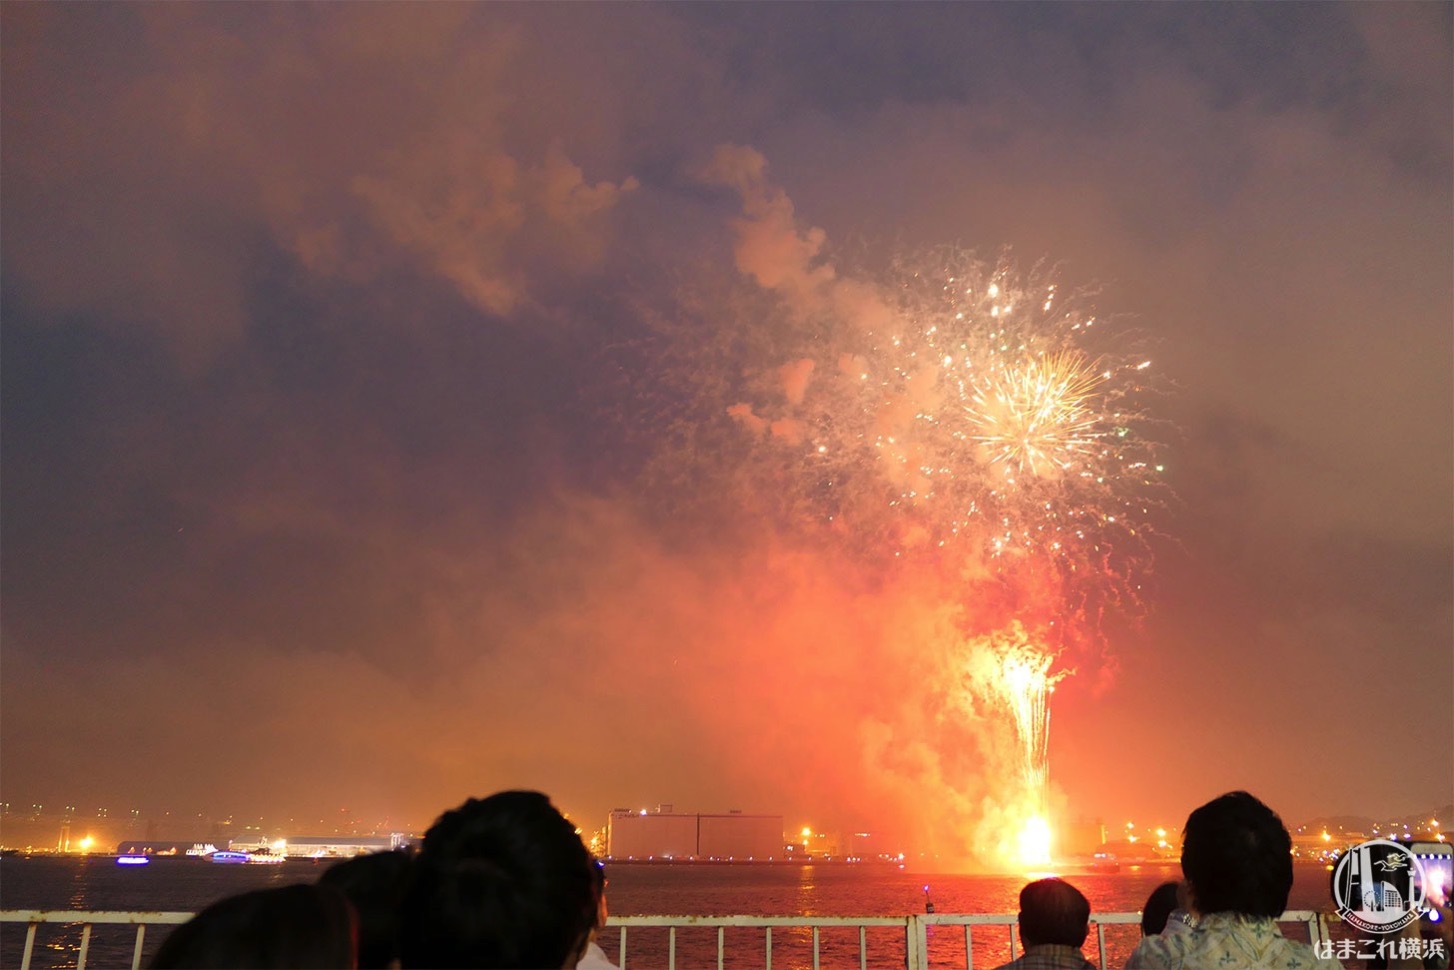 横浜スパークリングトワイライト 大さん橋 ペア席から見た打ち上げ花火